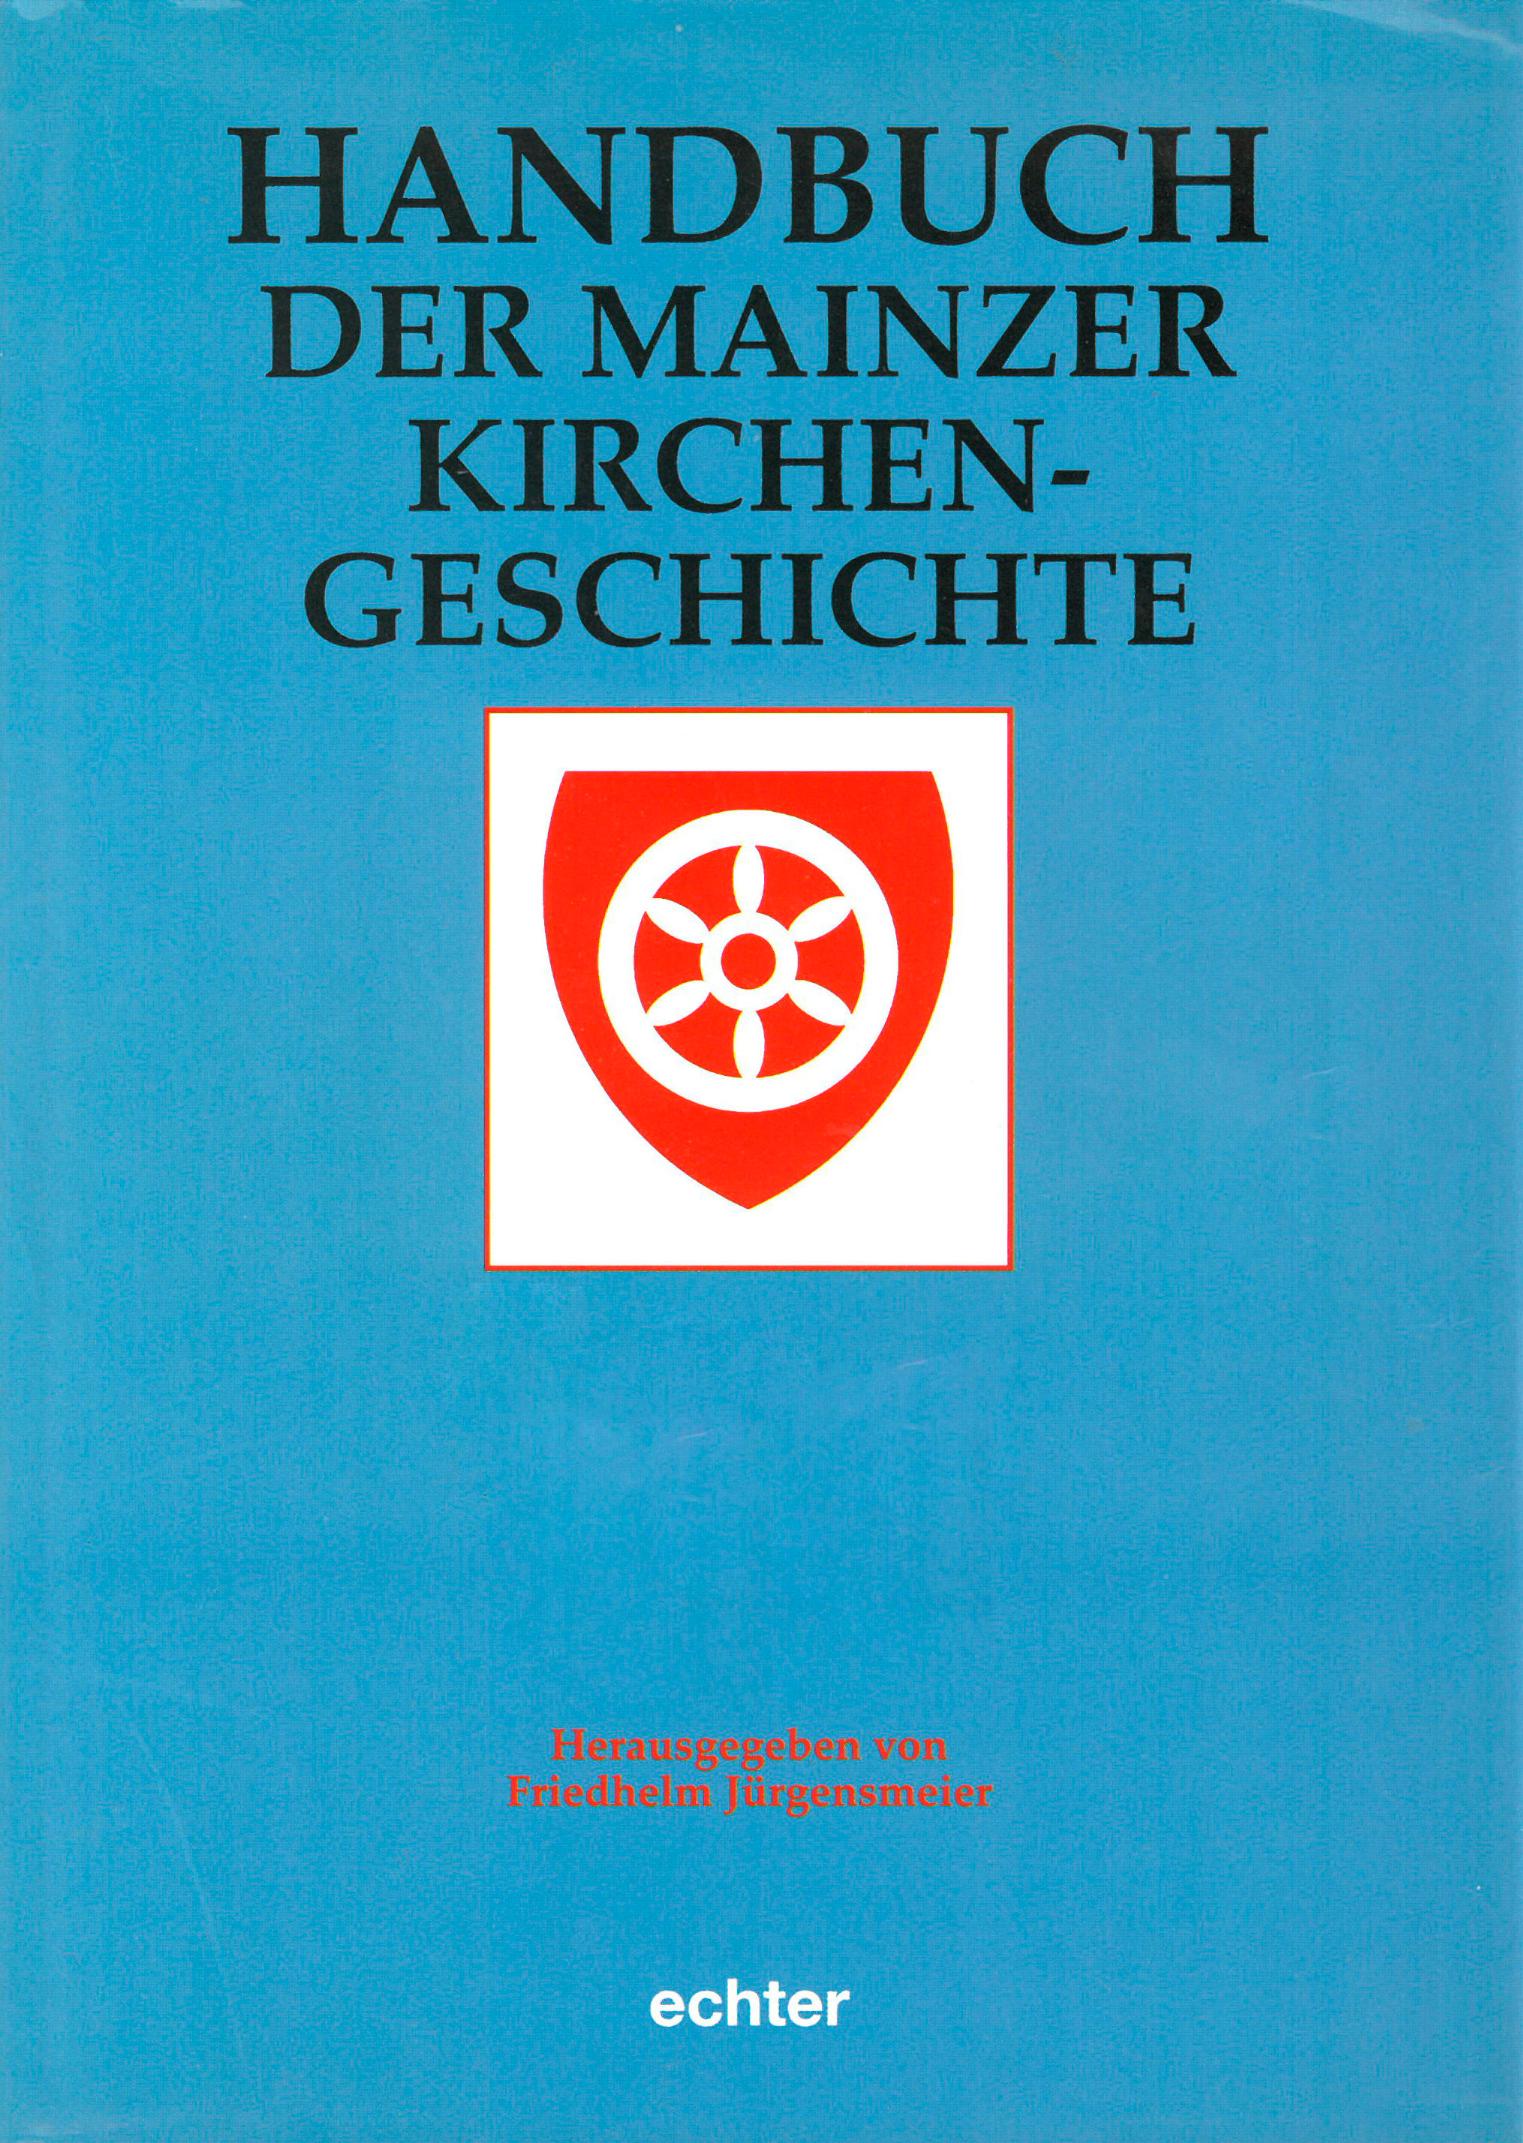 Handbuch allgemein (c) Echter / IMKG